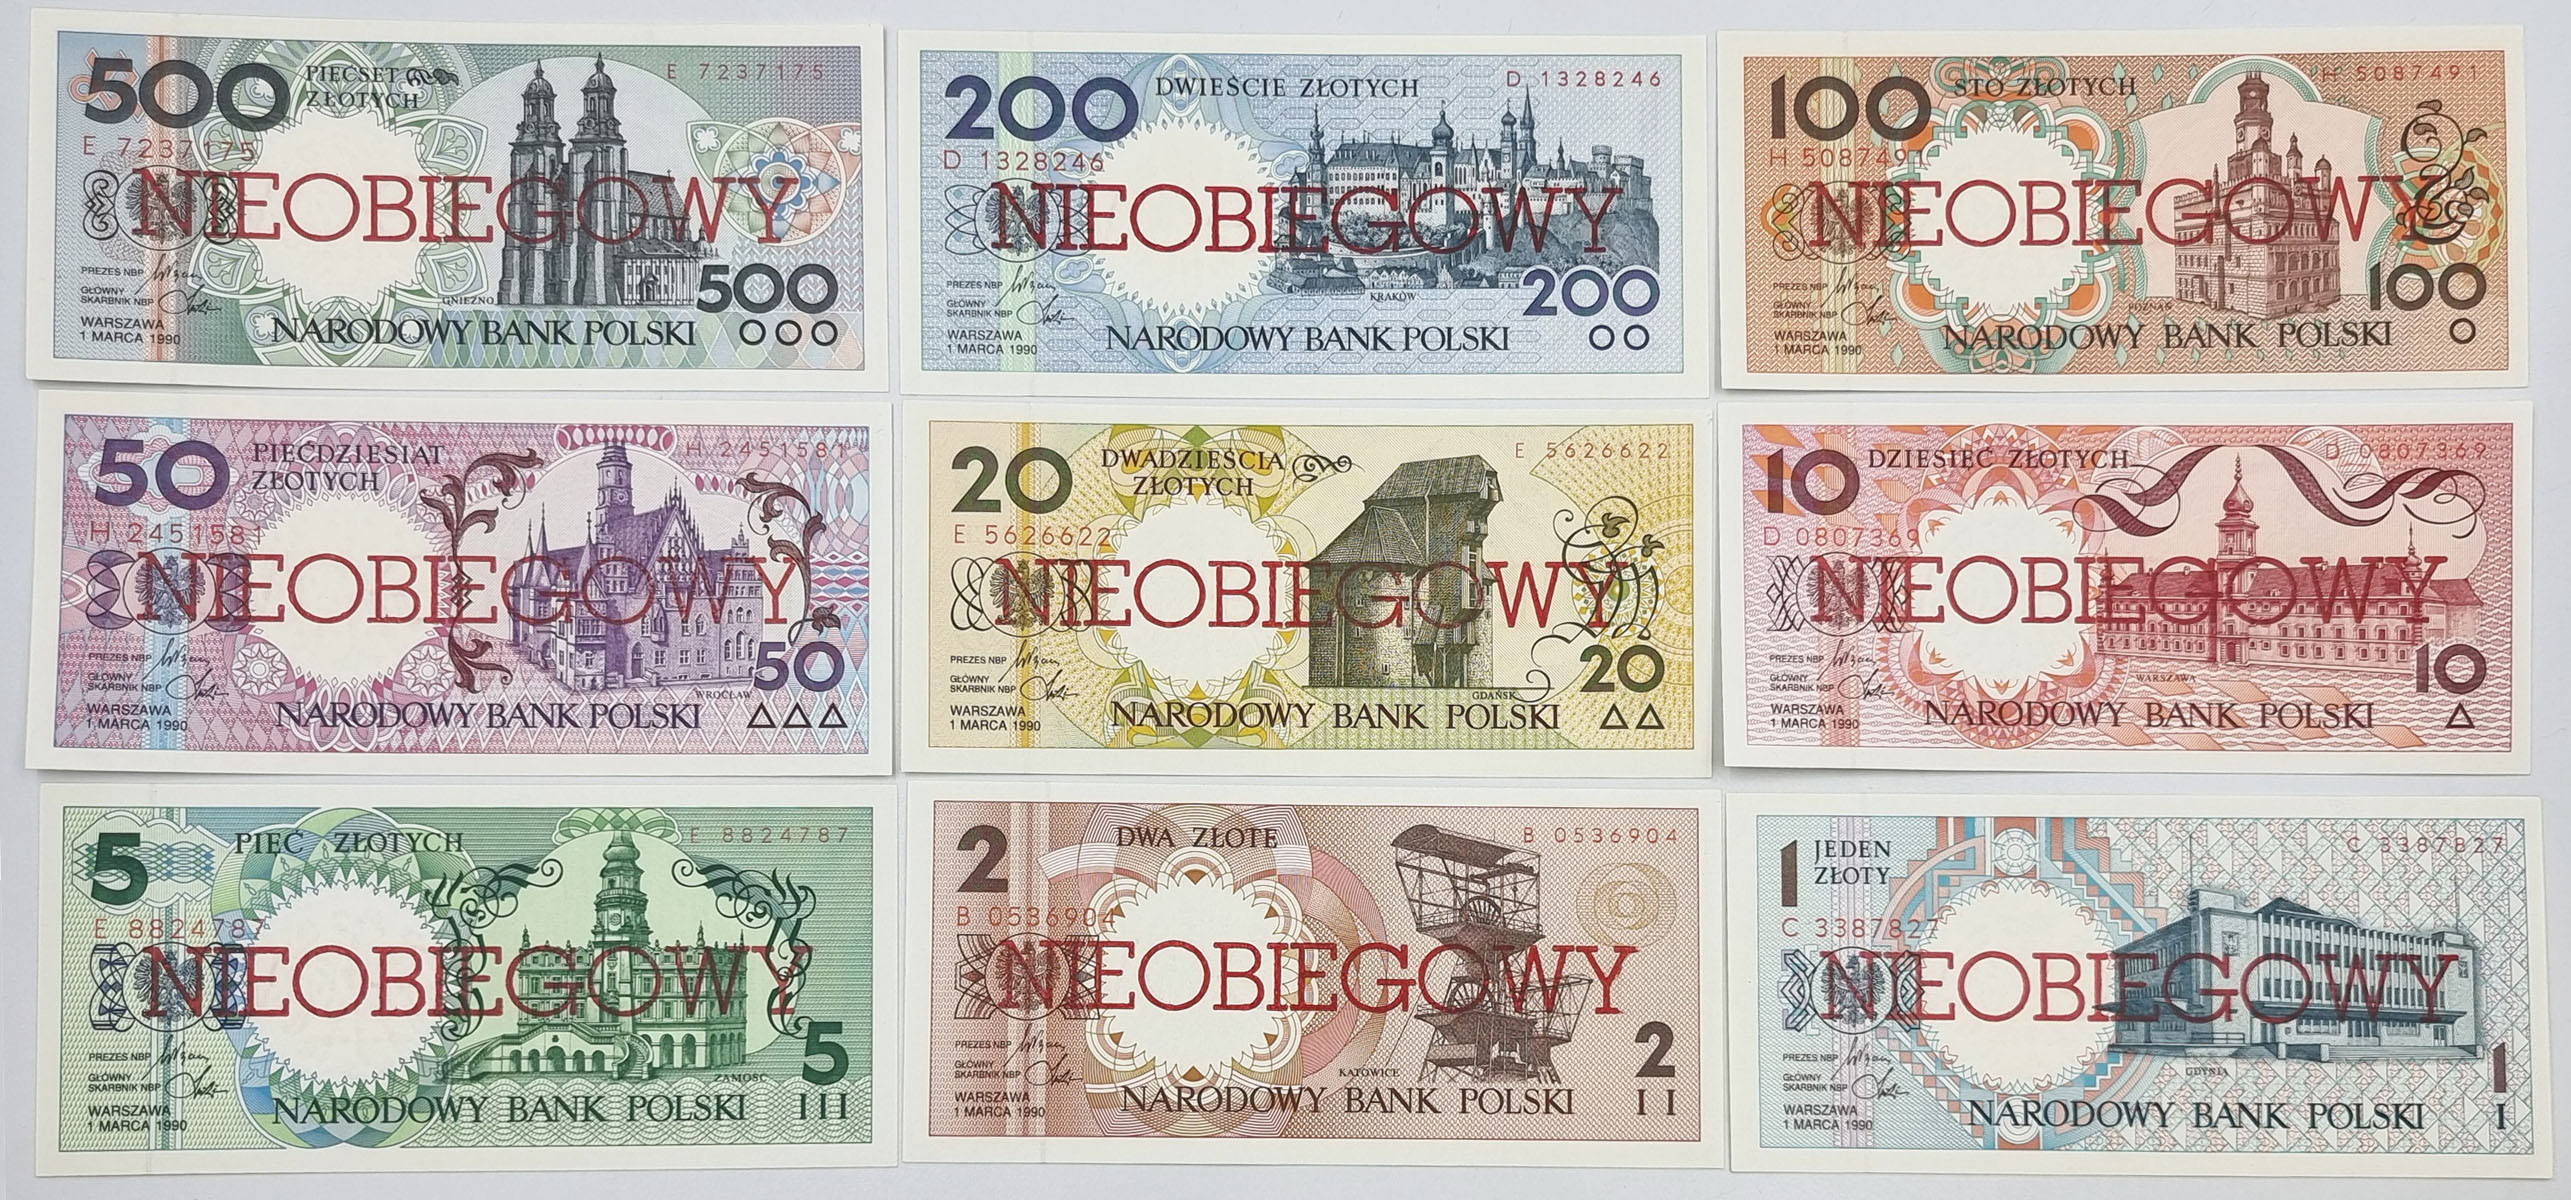 Miasta Polskie 1990 komplet banknotów 1-500 złotych – NIEOBIEGOWY